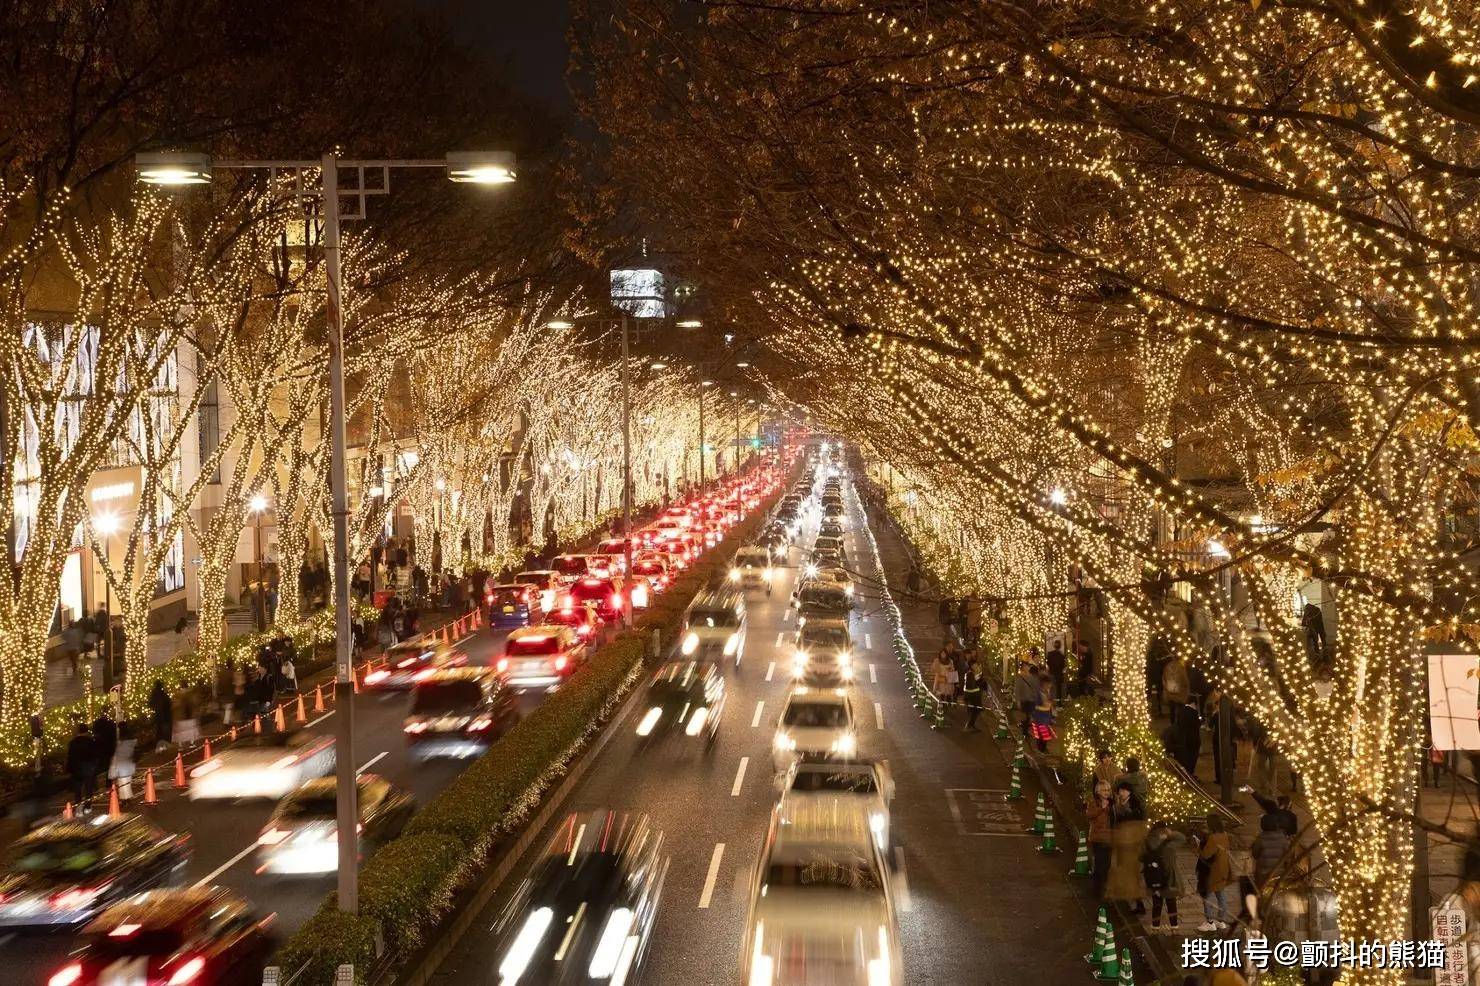 足不出户周游 带你看日本今年冬季的点灯夜景